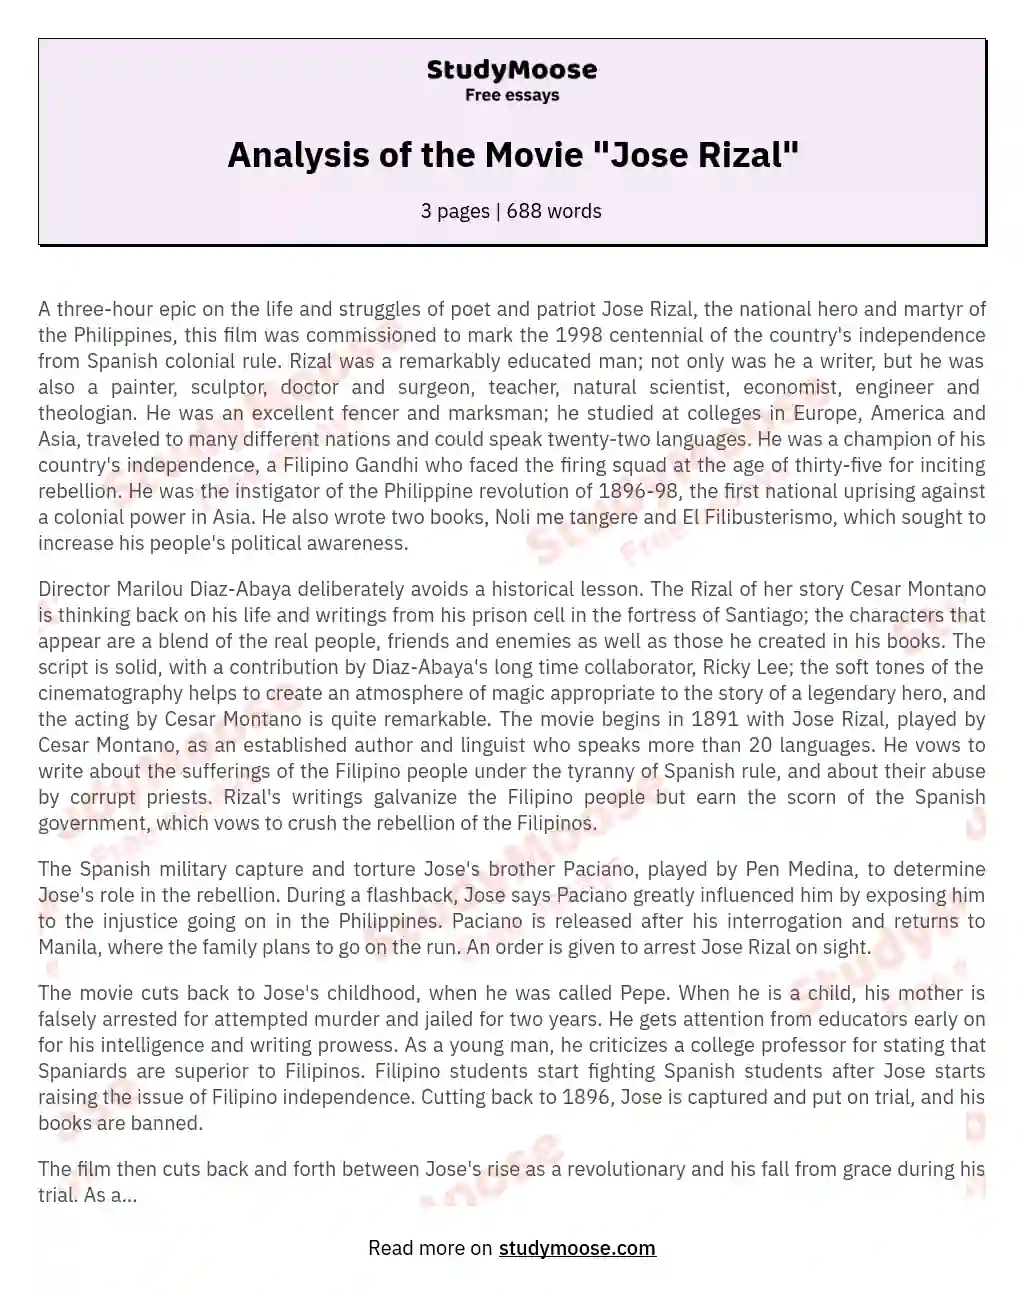 Analysis of the Movie "Jose Rizal" essay